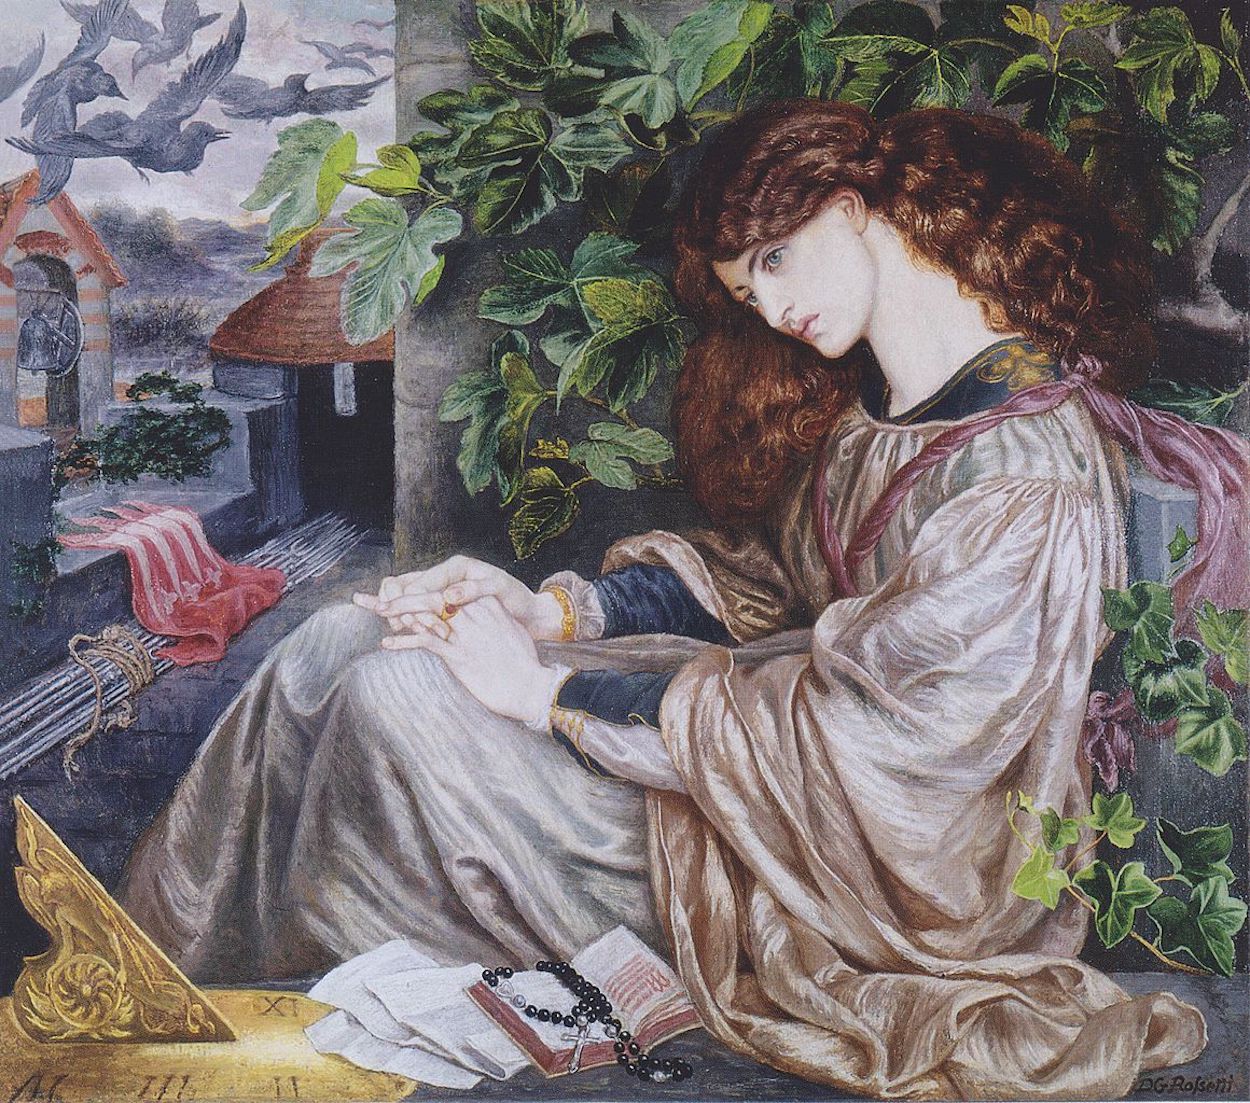 La Pia de' Tolomei by Dante Gabriel Rossetti - 1868–1880 - 104.8 x 120.6 cm Spencer Museum of Art